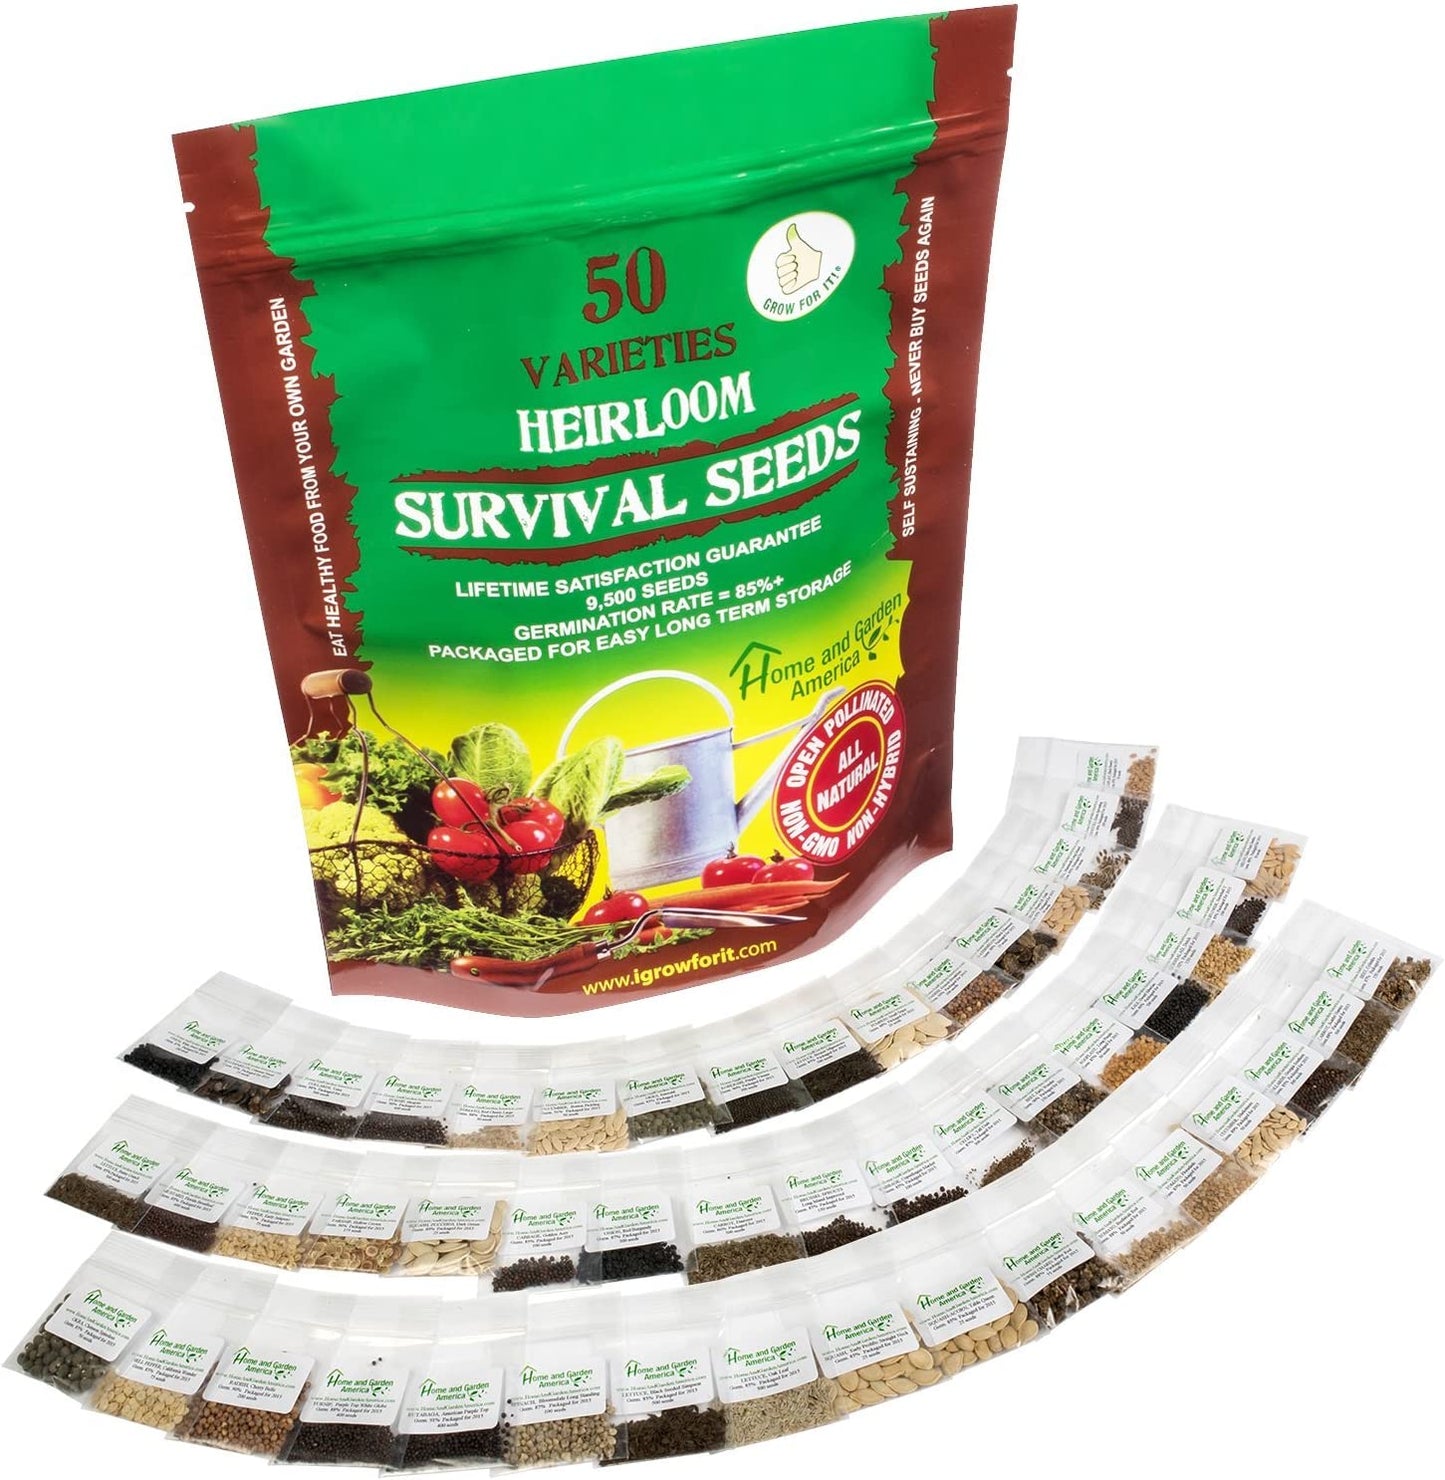 Heirloom Vegetable Seeds Non GMO Survival Seed Kit - 50 Varieties 100% Naturally Grown